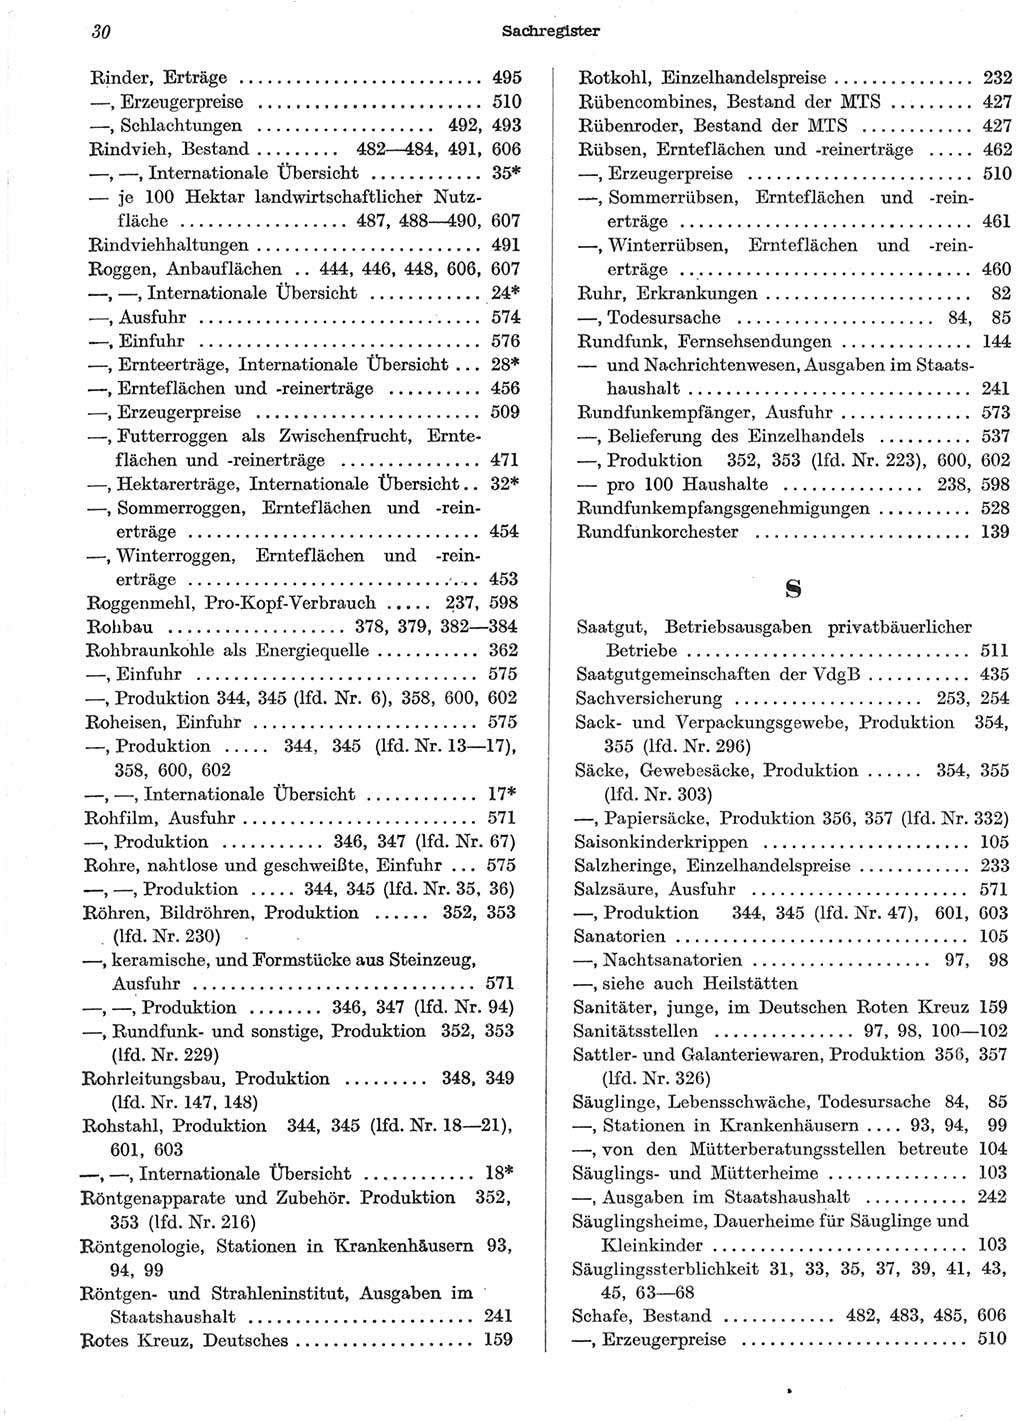 Statistisches Jahrbuch der Deutschen Demokratischen Republik (DDR) 1958, Seite 30 (Stat. Jb. DDR 1958, S. 30)